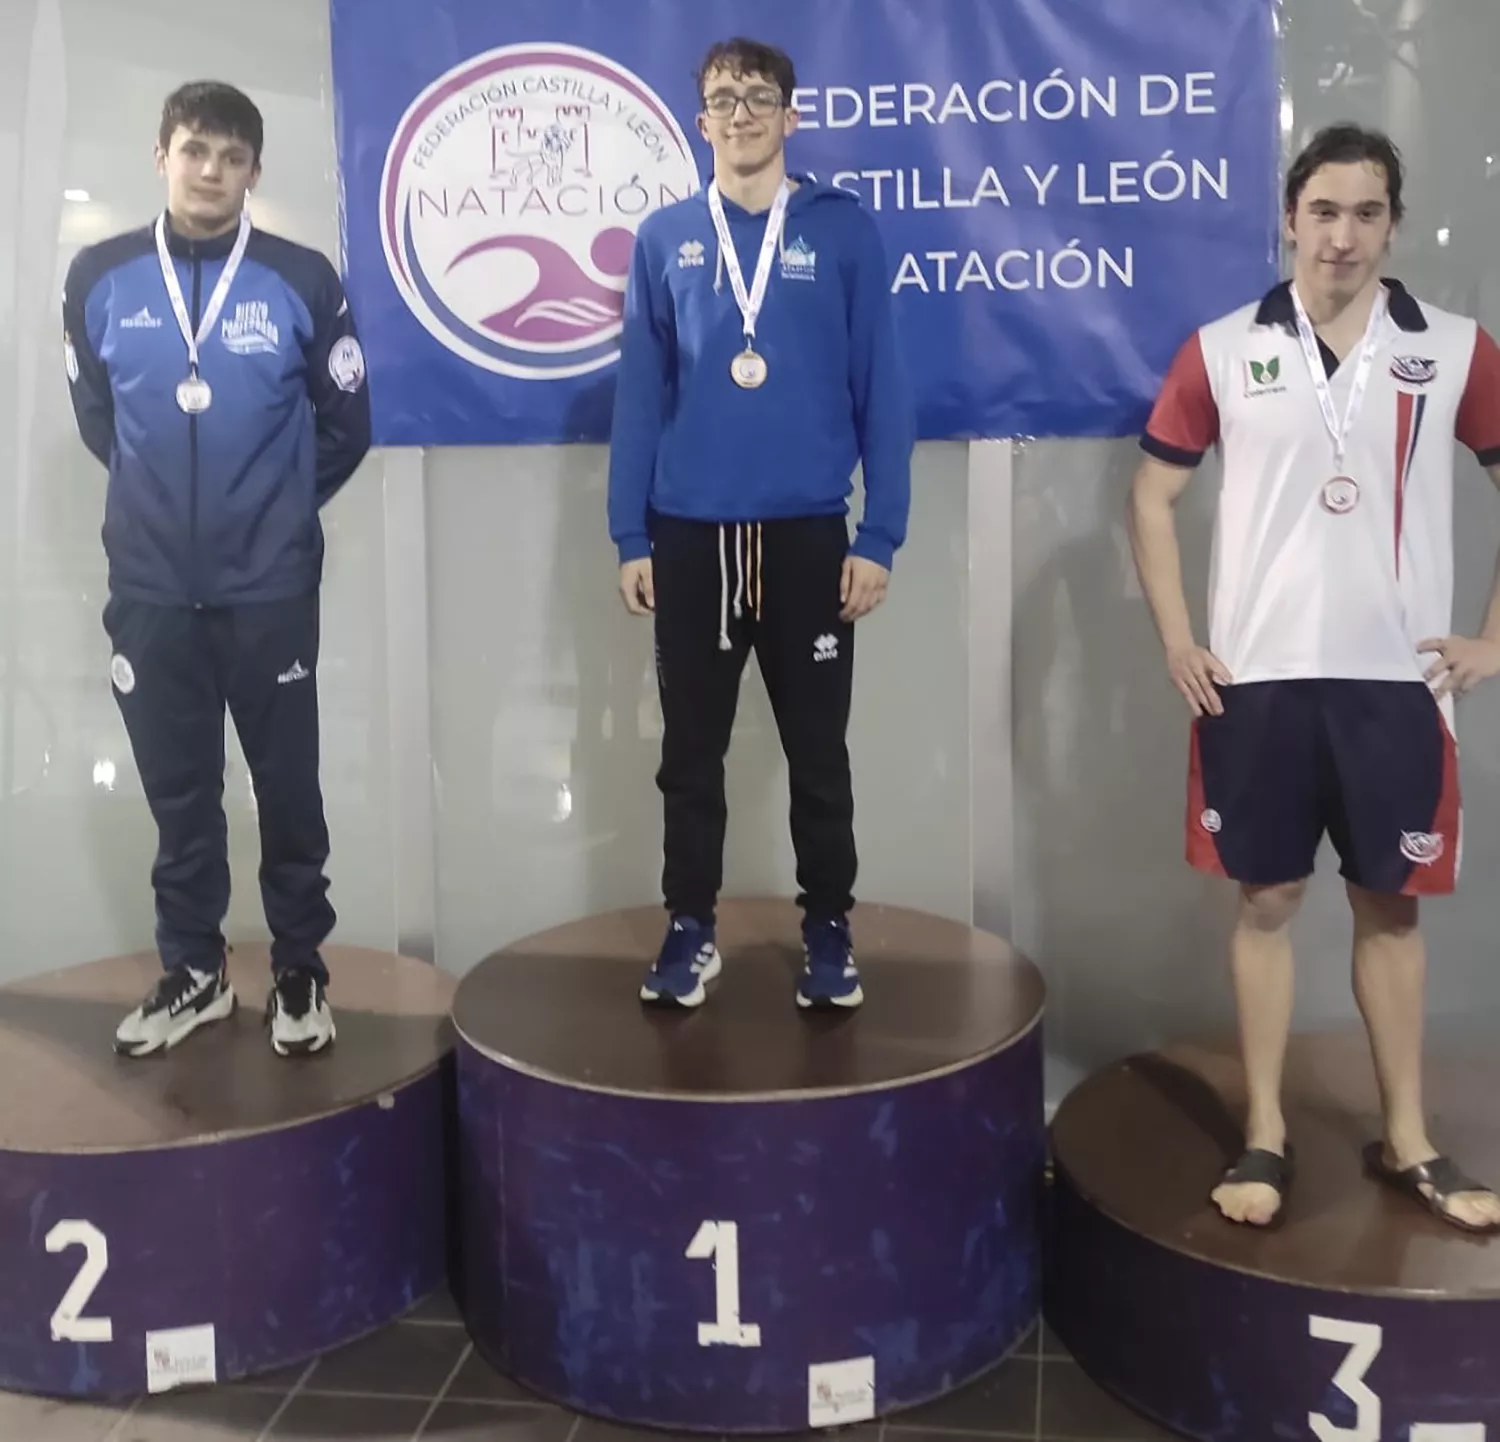 Campeonato de natación de Castilla y León Junior